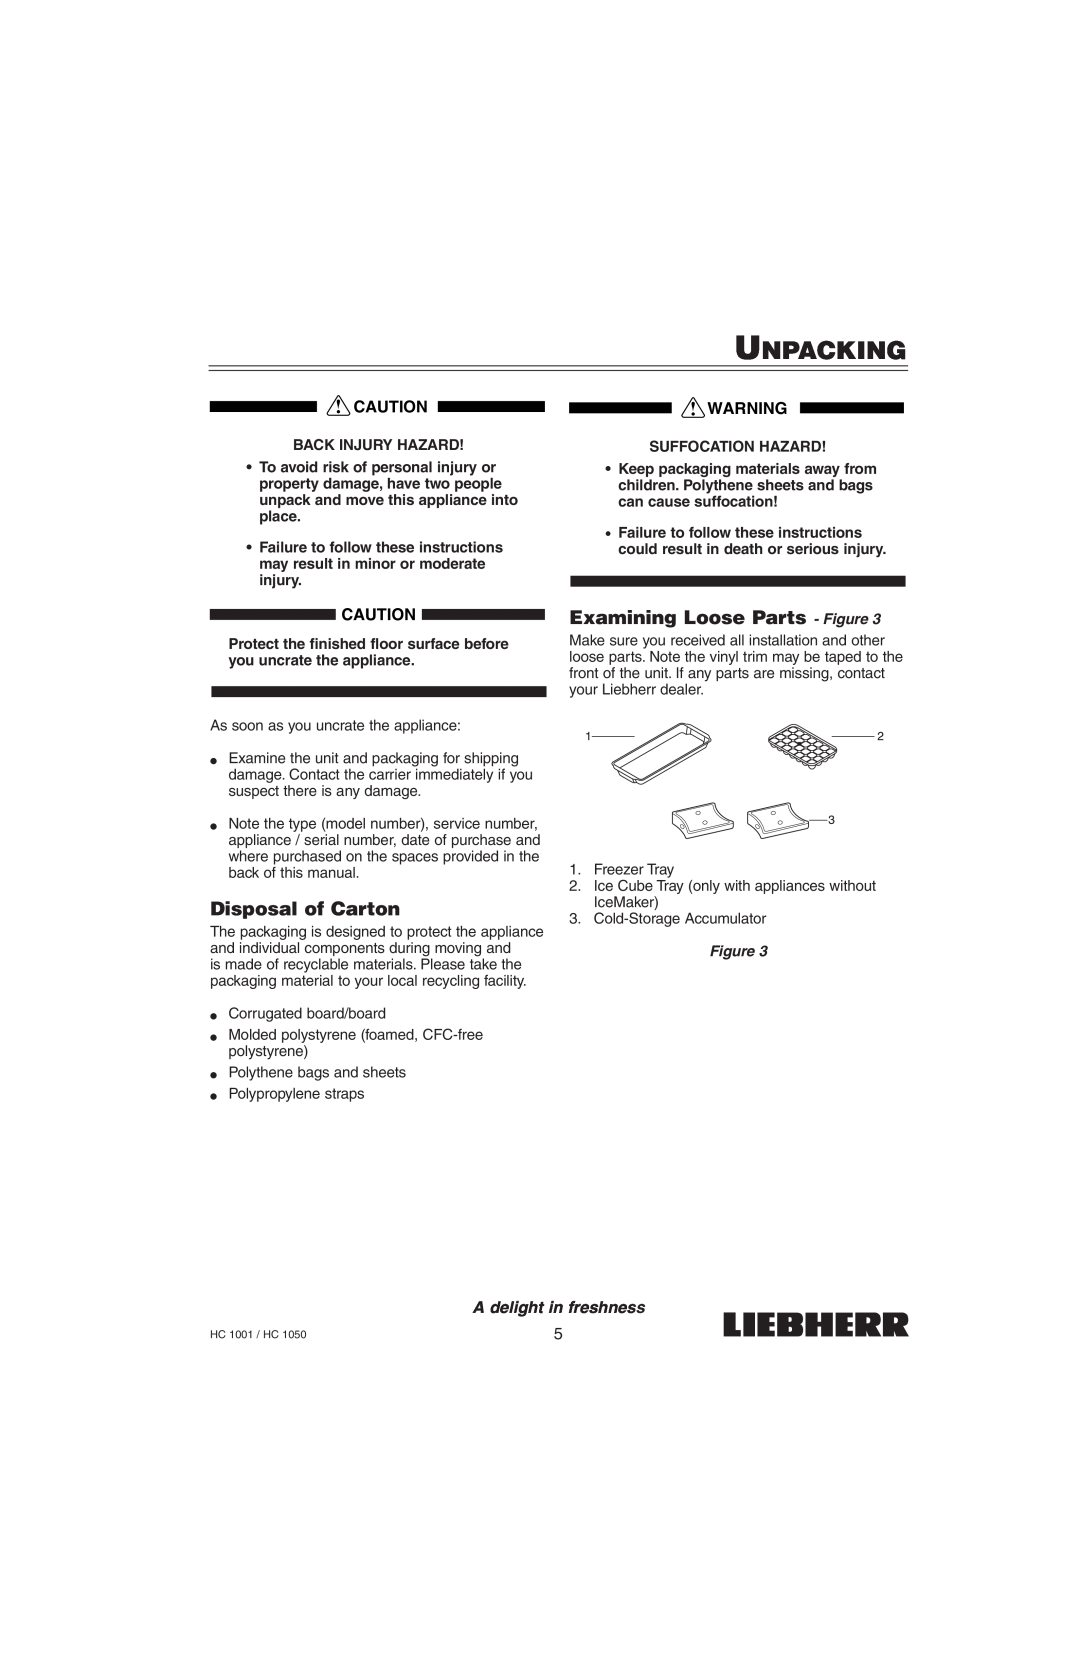 Liebherr HC1050 Unpacking, Disposal of Carton, Examining Loose Parts - Figure, Back Injury Hazard, Suffocation Hazard 